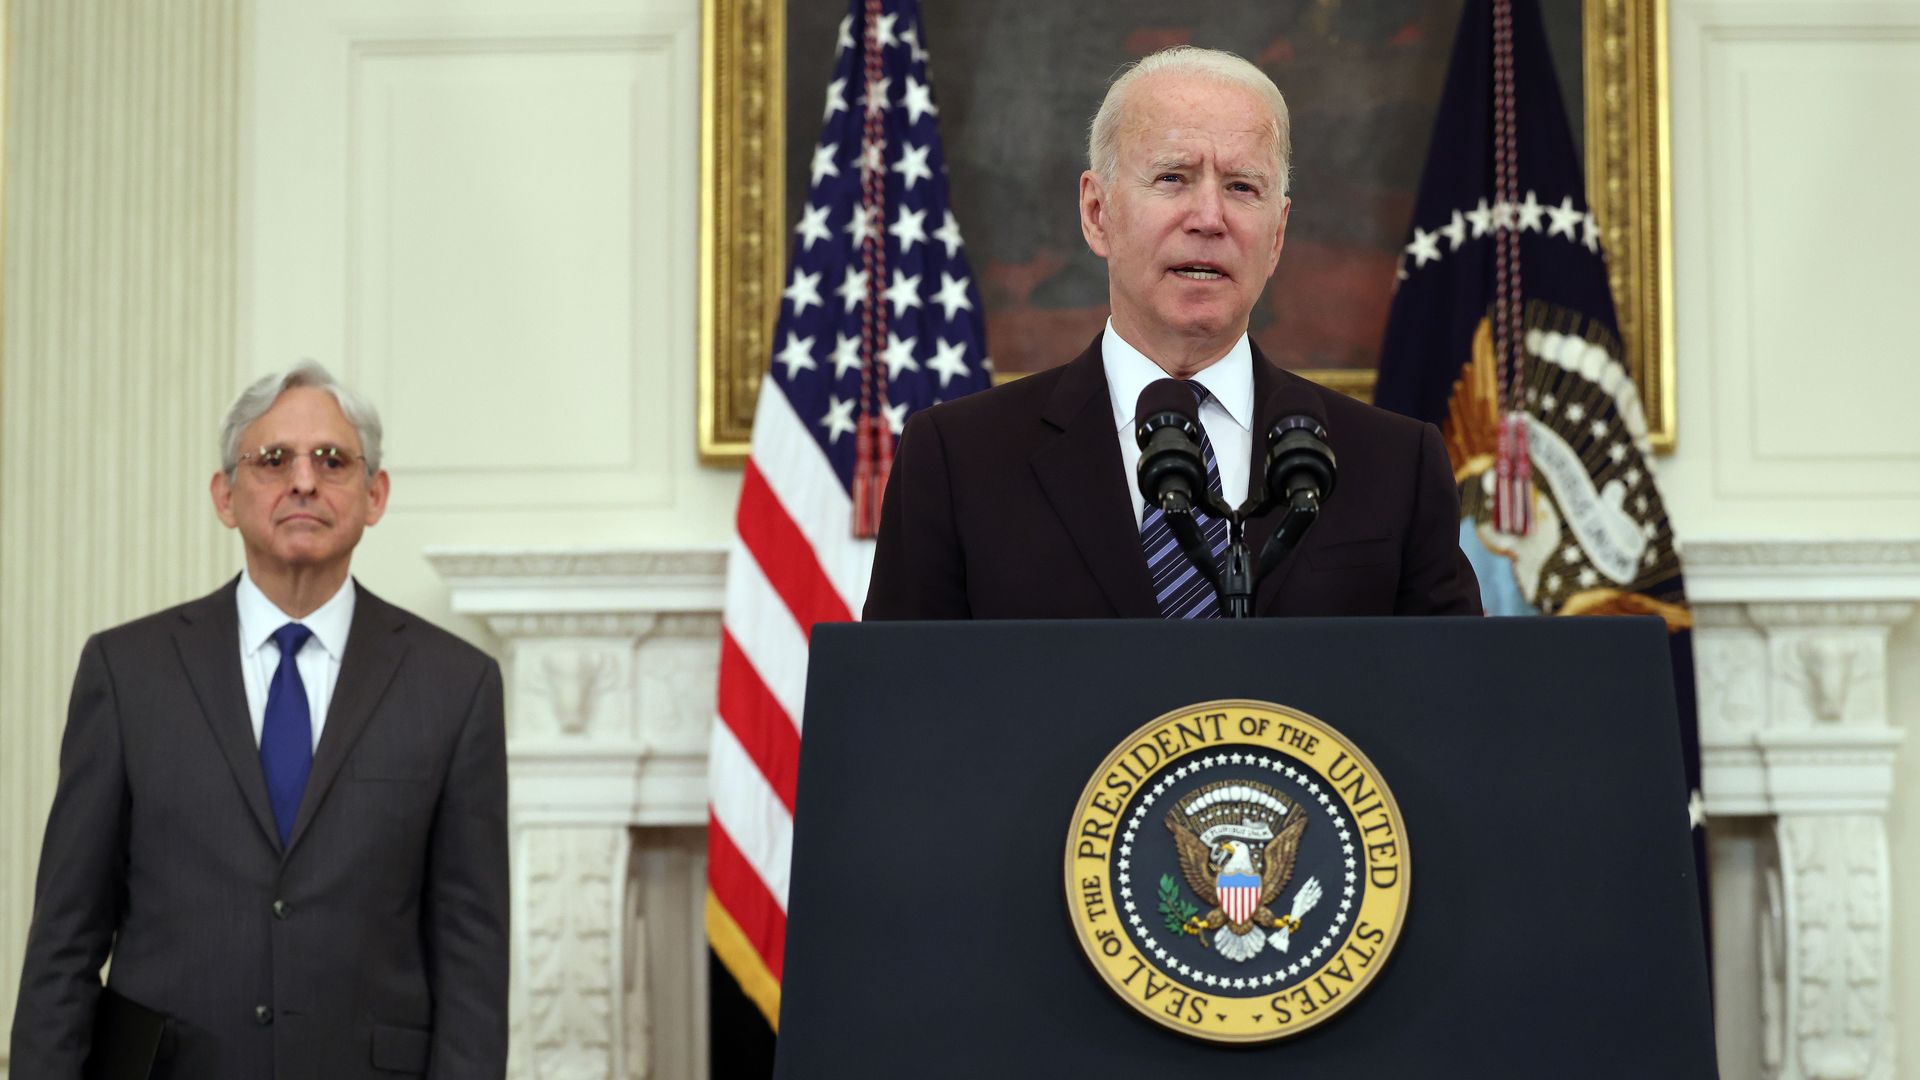 President Joe Biden speaks on gun crime prevention measures as Attorney General Merrick Garland looks on.